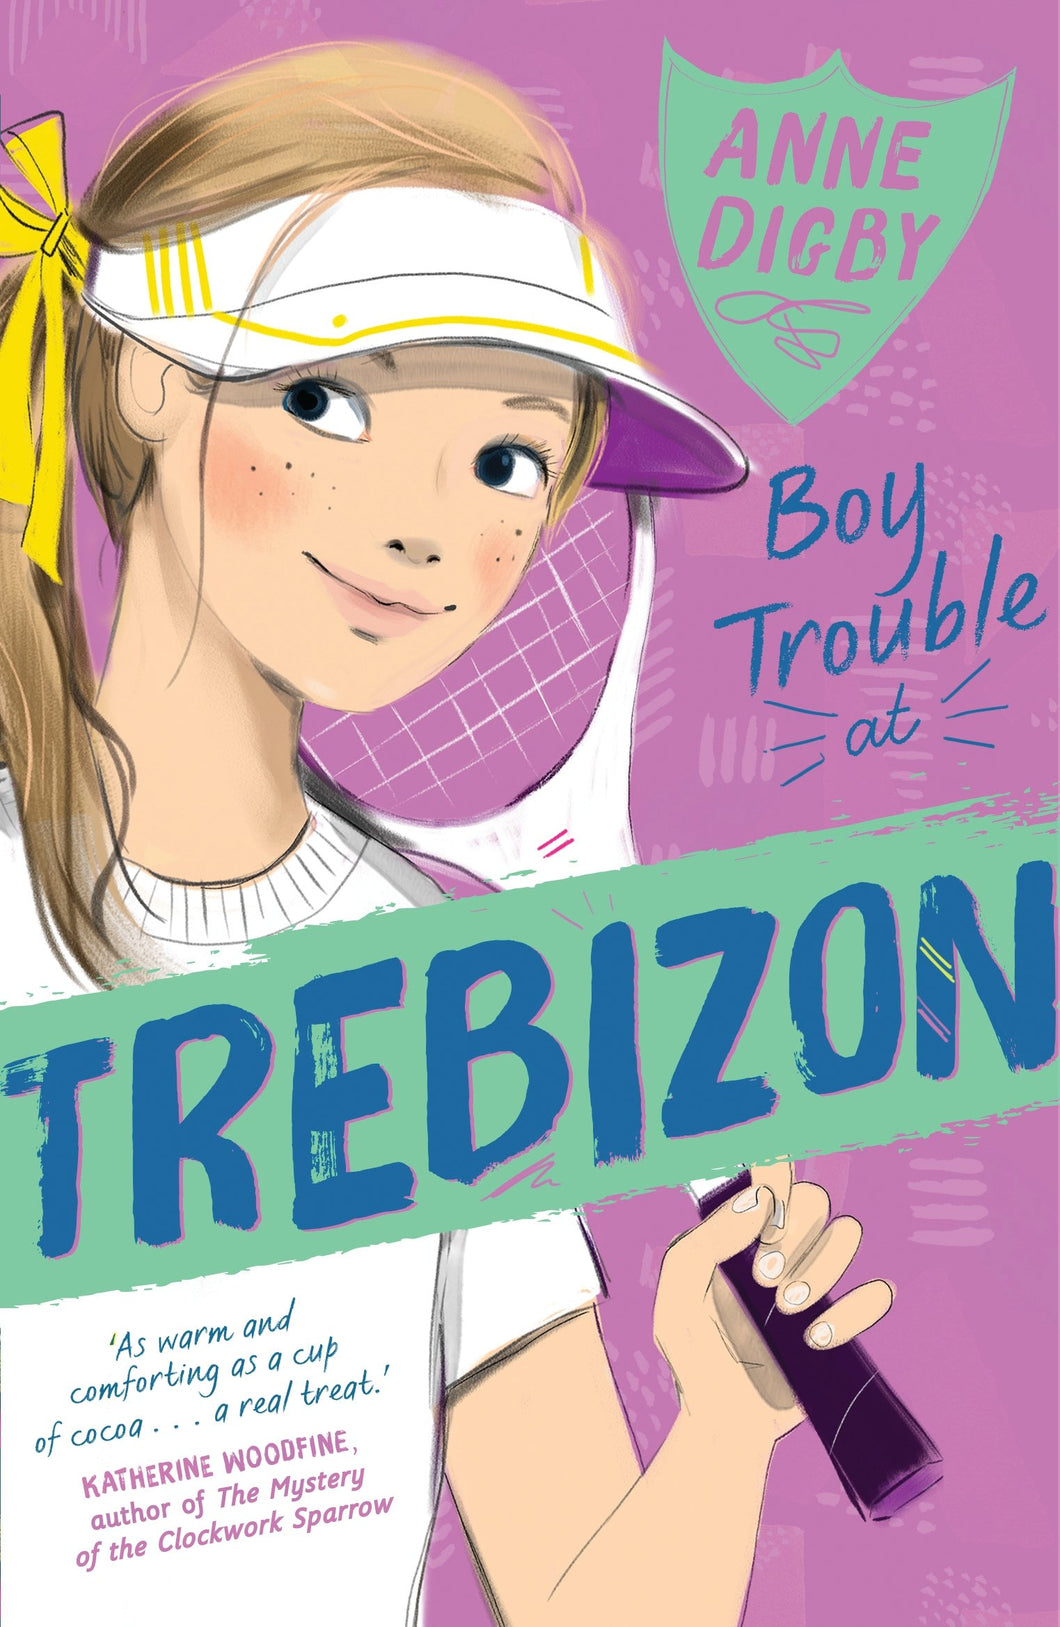 Trebizon Boarding School: Boy Trouble (#4)